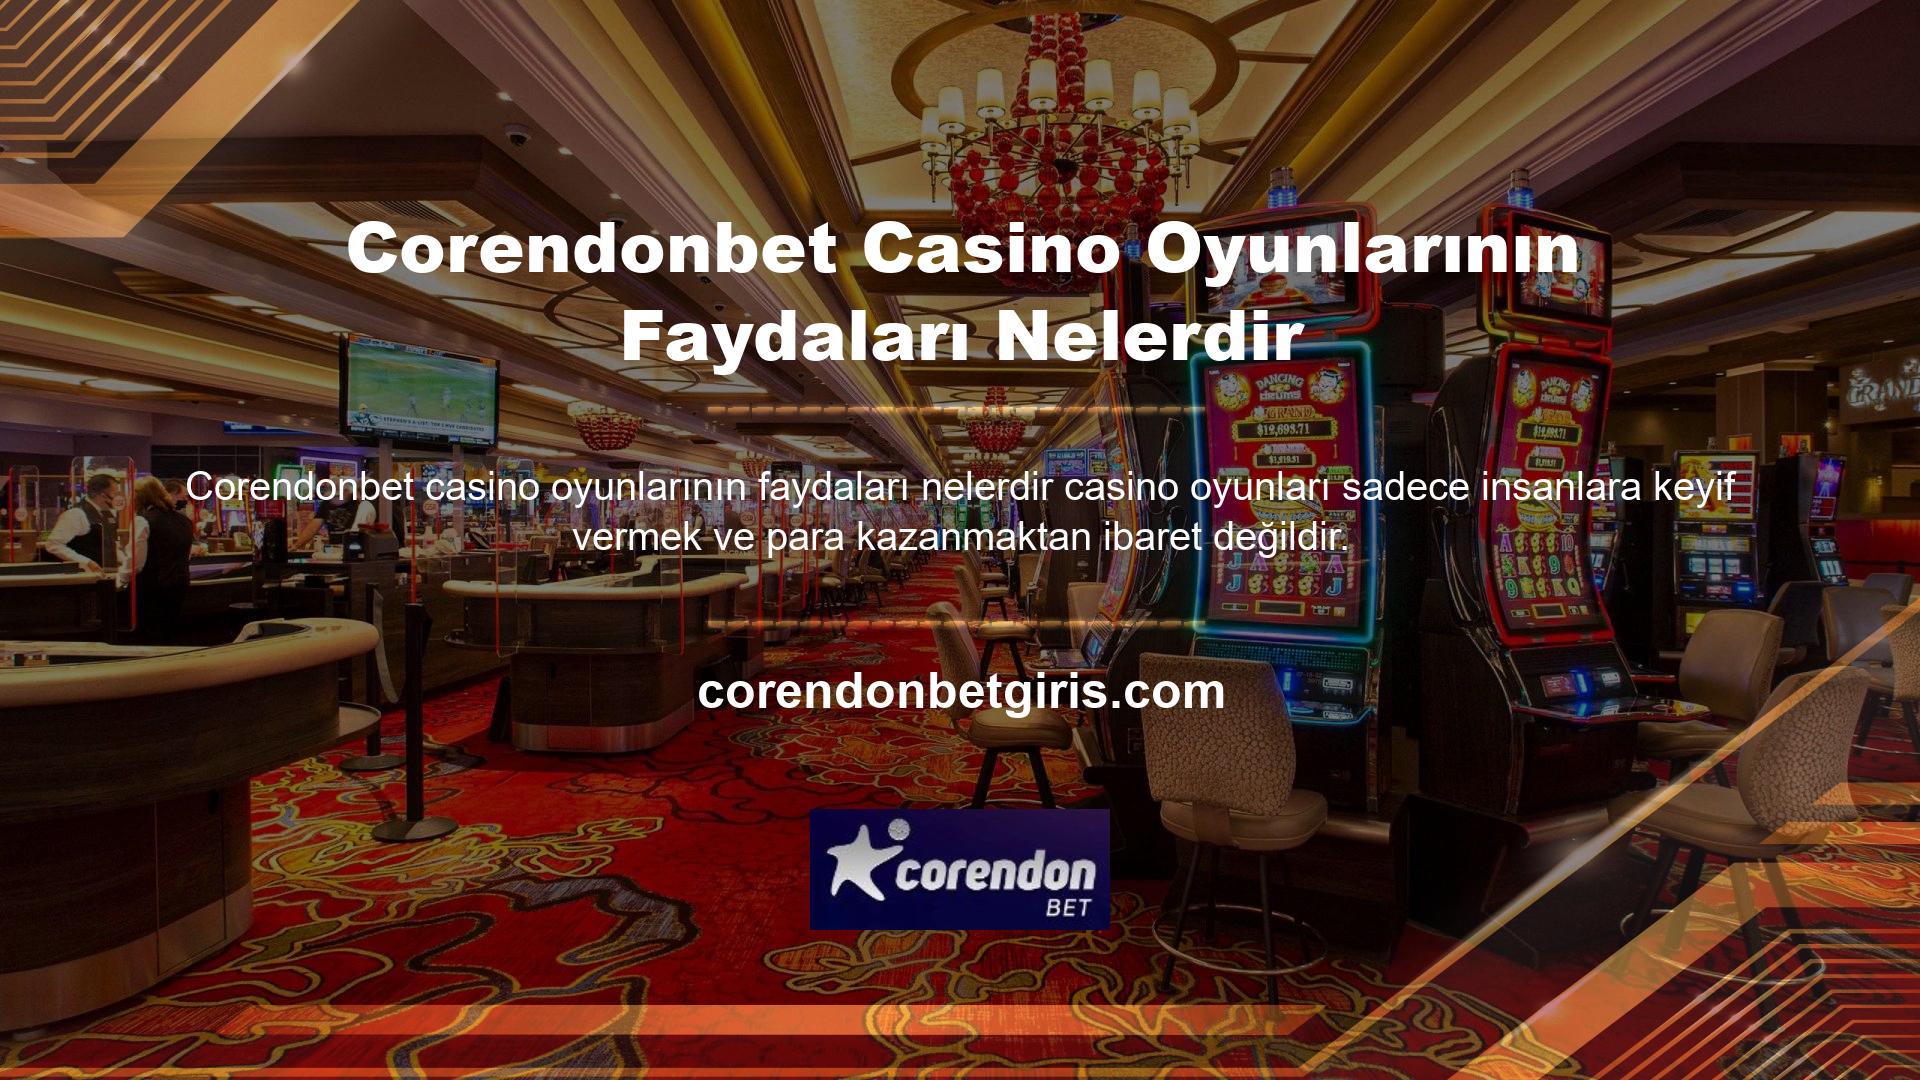 Aynı zamanda Corendonbet Casino'da canlı oyunların keyfini çıkarmak için de harika bir yerdir